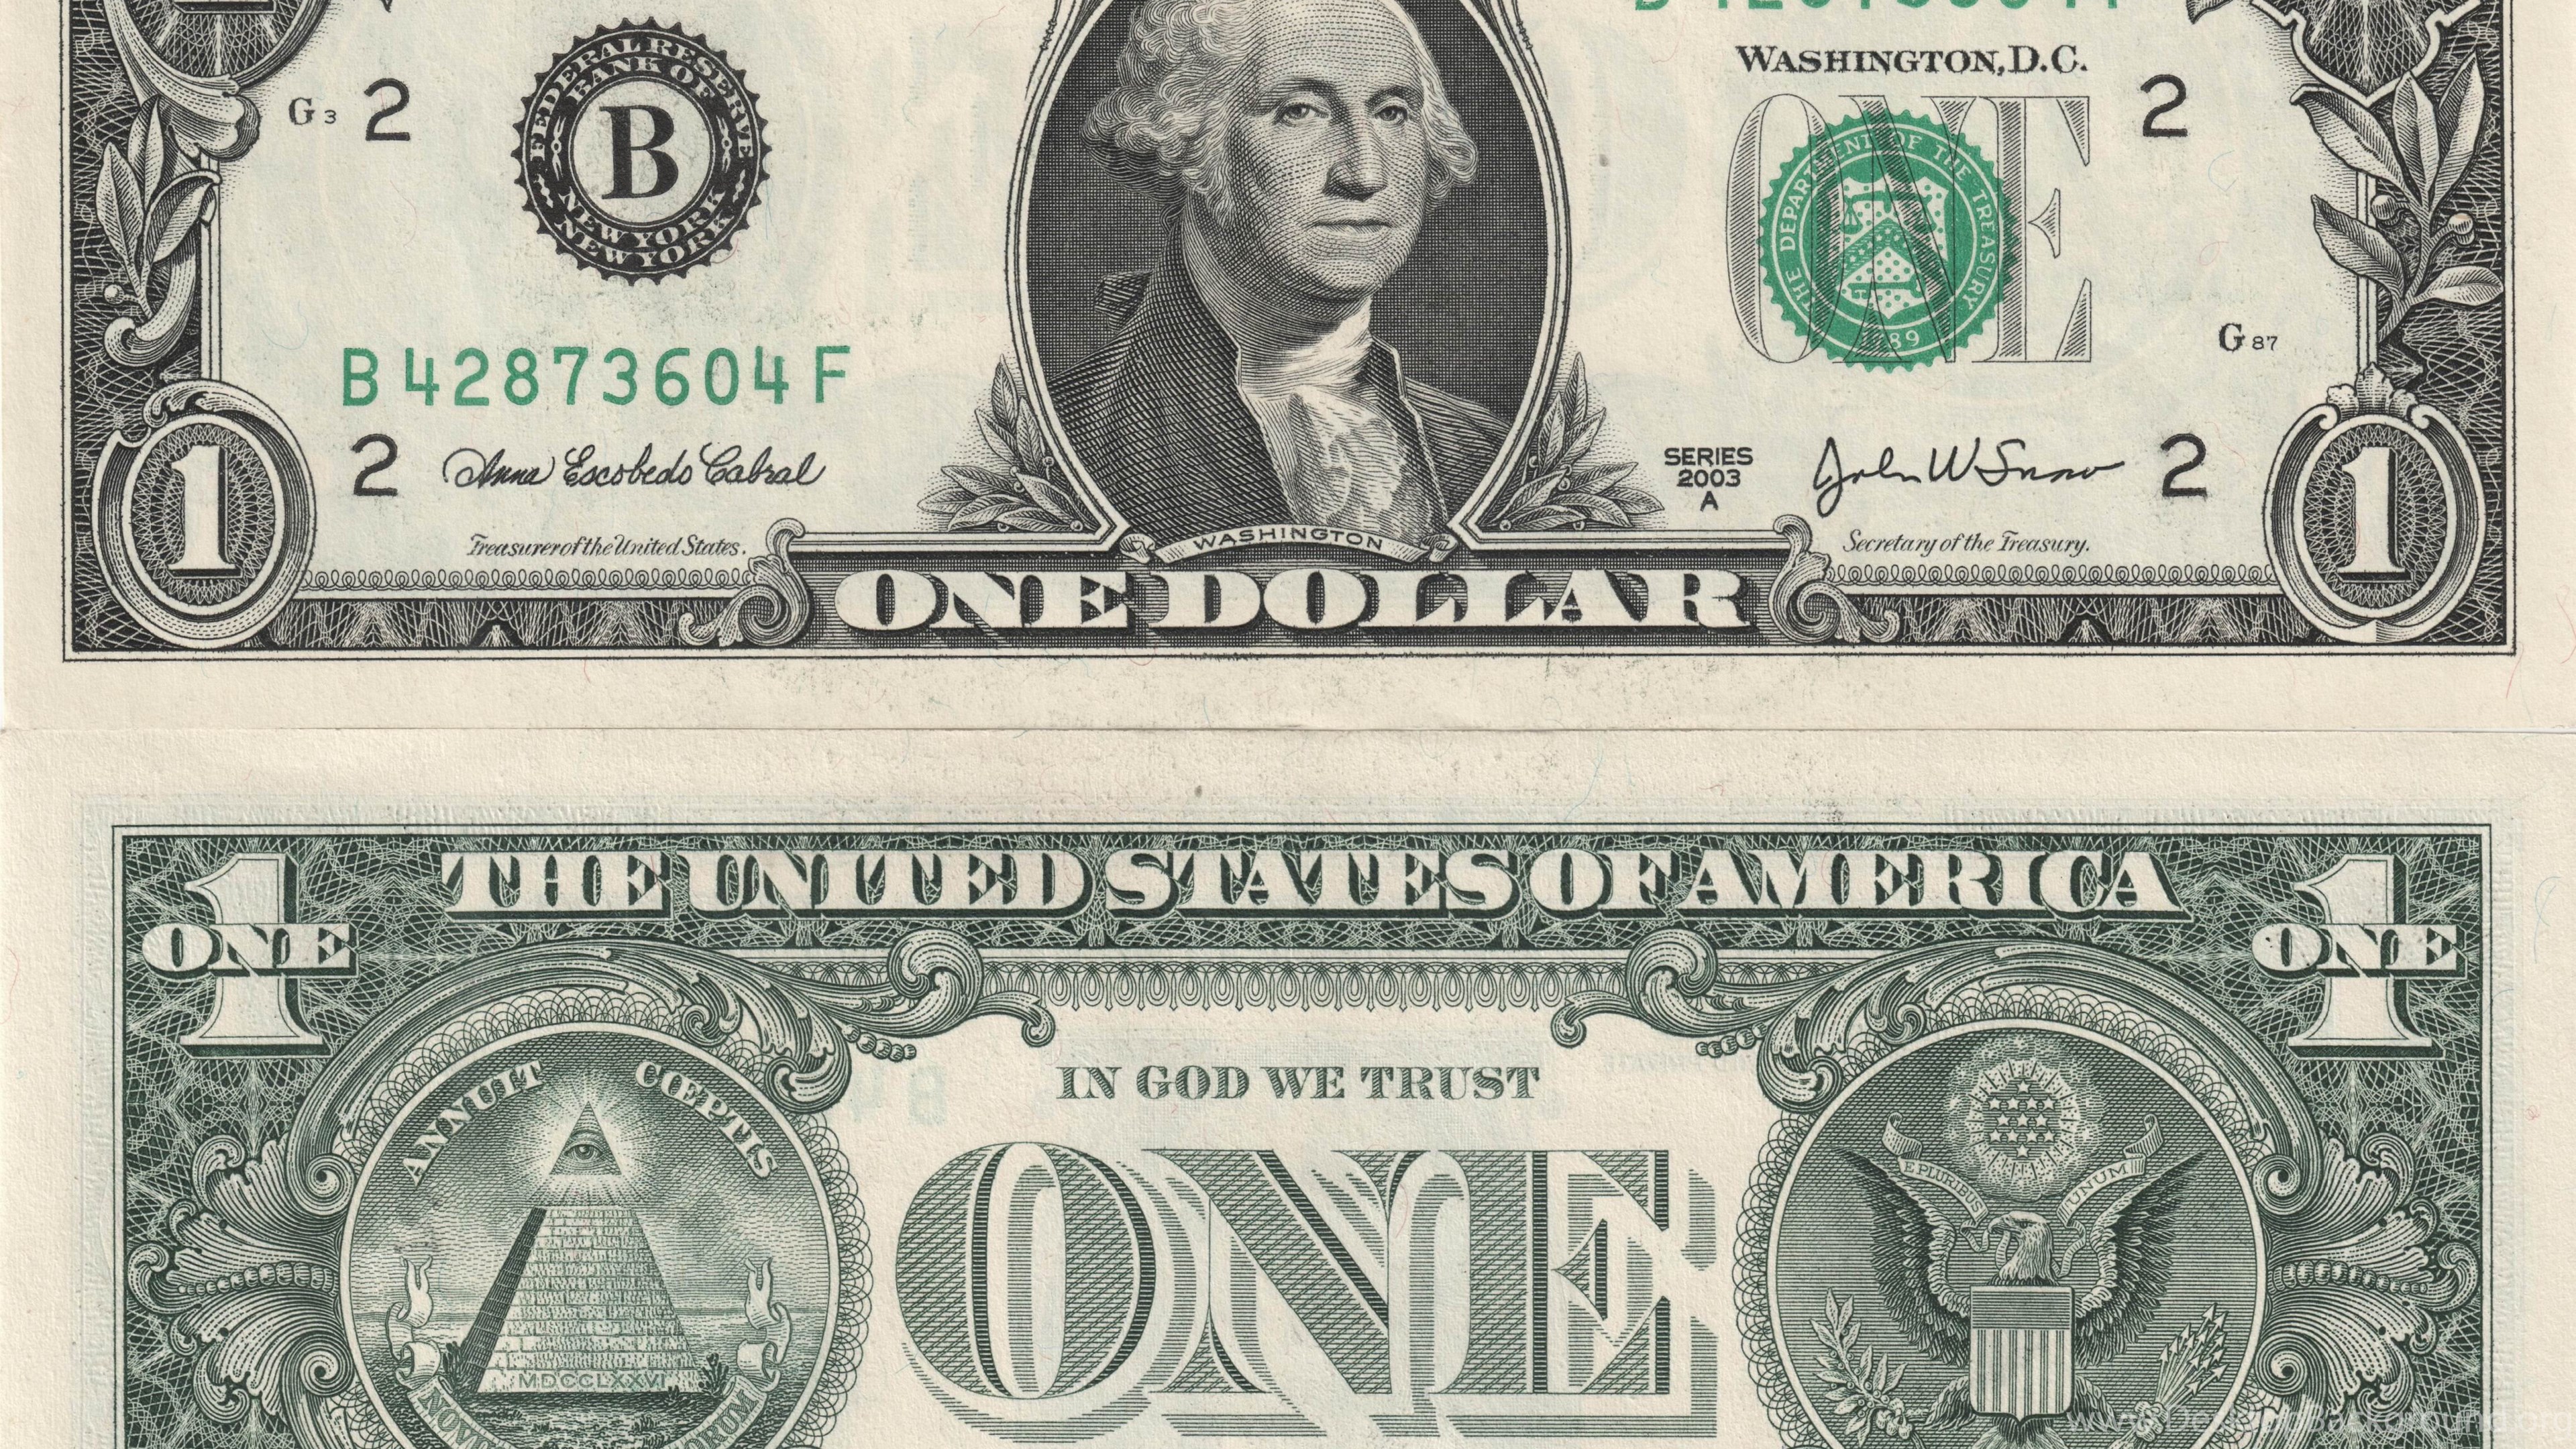 Сколько т доллар. Банкнота 1 доллар США. Изображение долларовых купюр. Американская купюра 1 доллар. Однодолларовая купюра США.